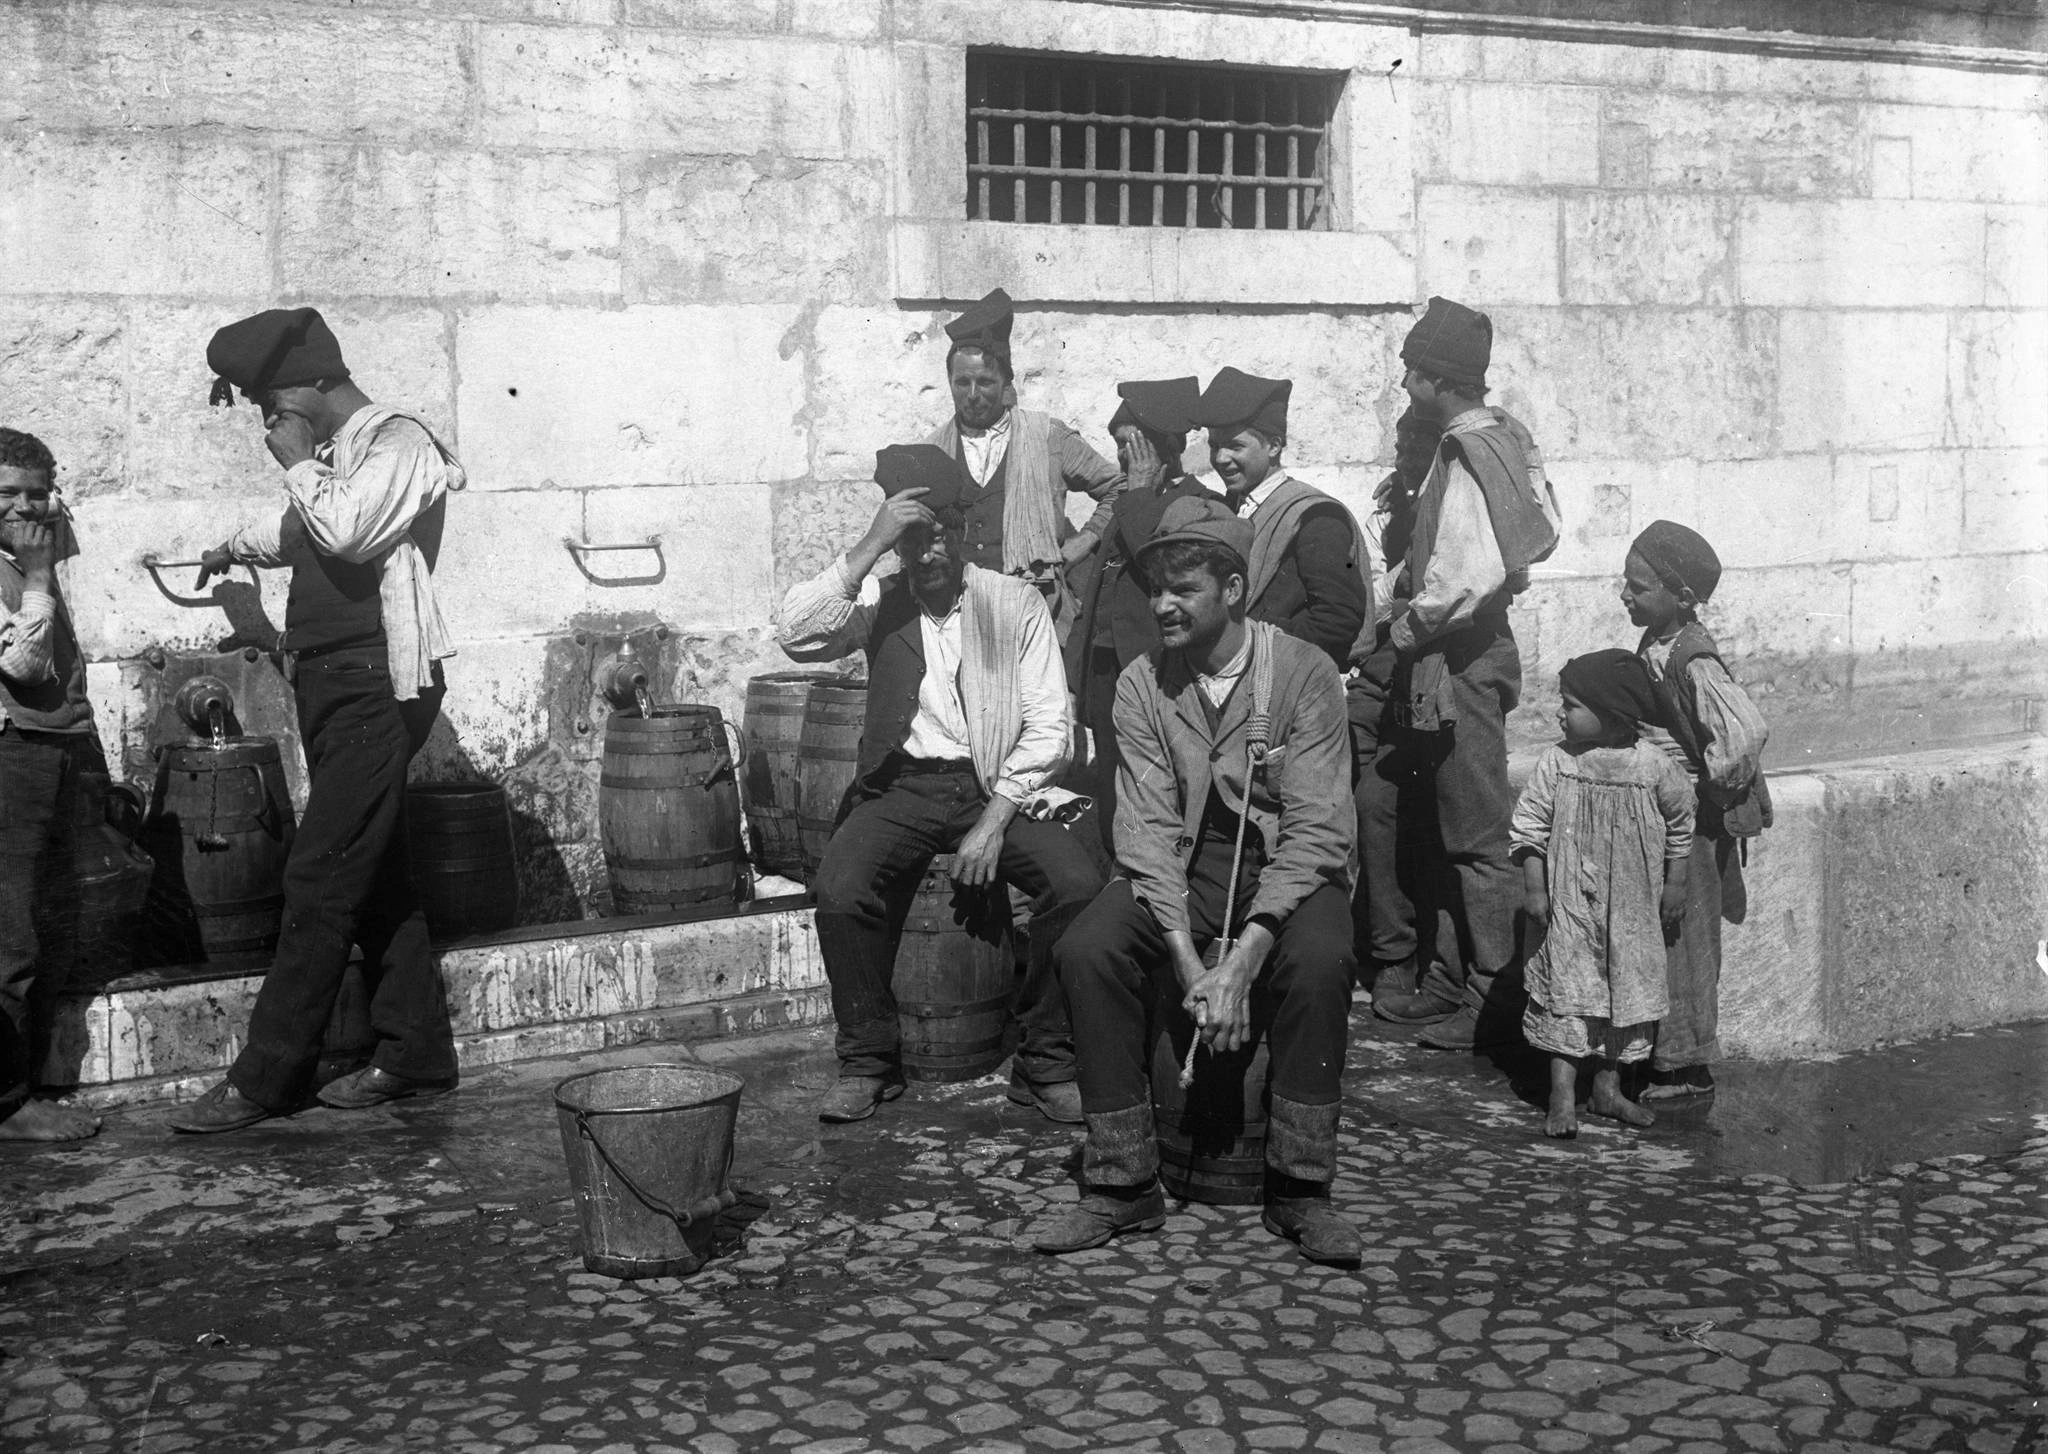 galician watercarriers in lisbon-early xx-photo arquivo municipal de lisboa-by Joshua benoliel.jpg